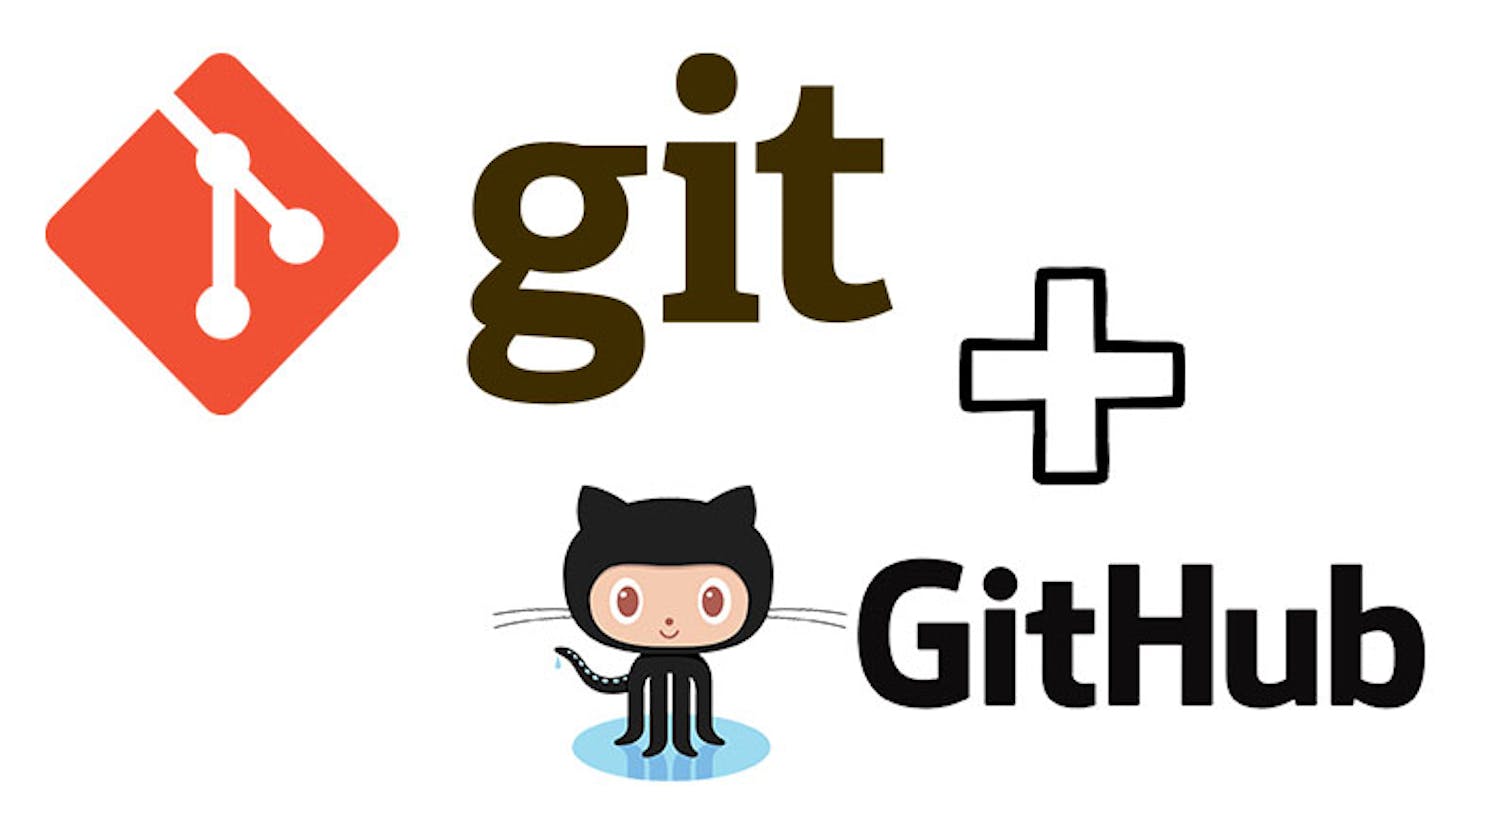 Git & Github